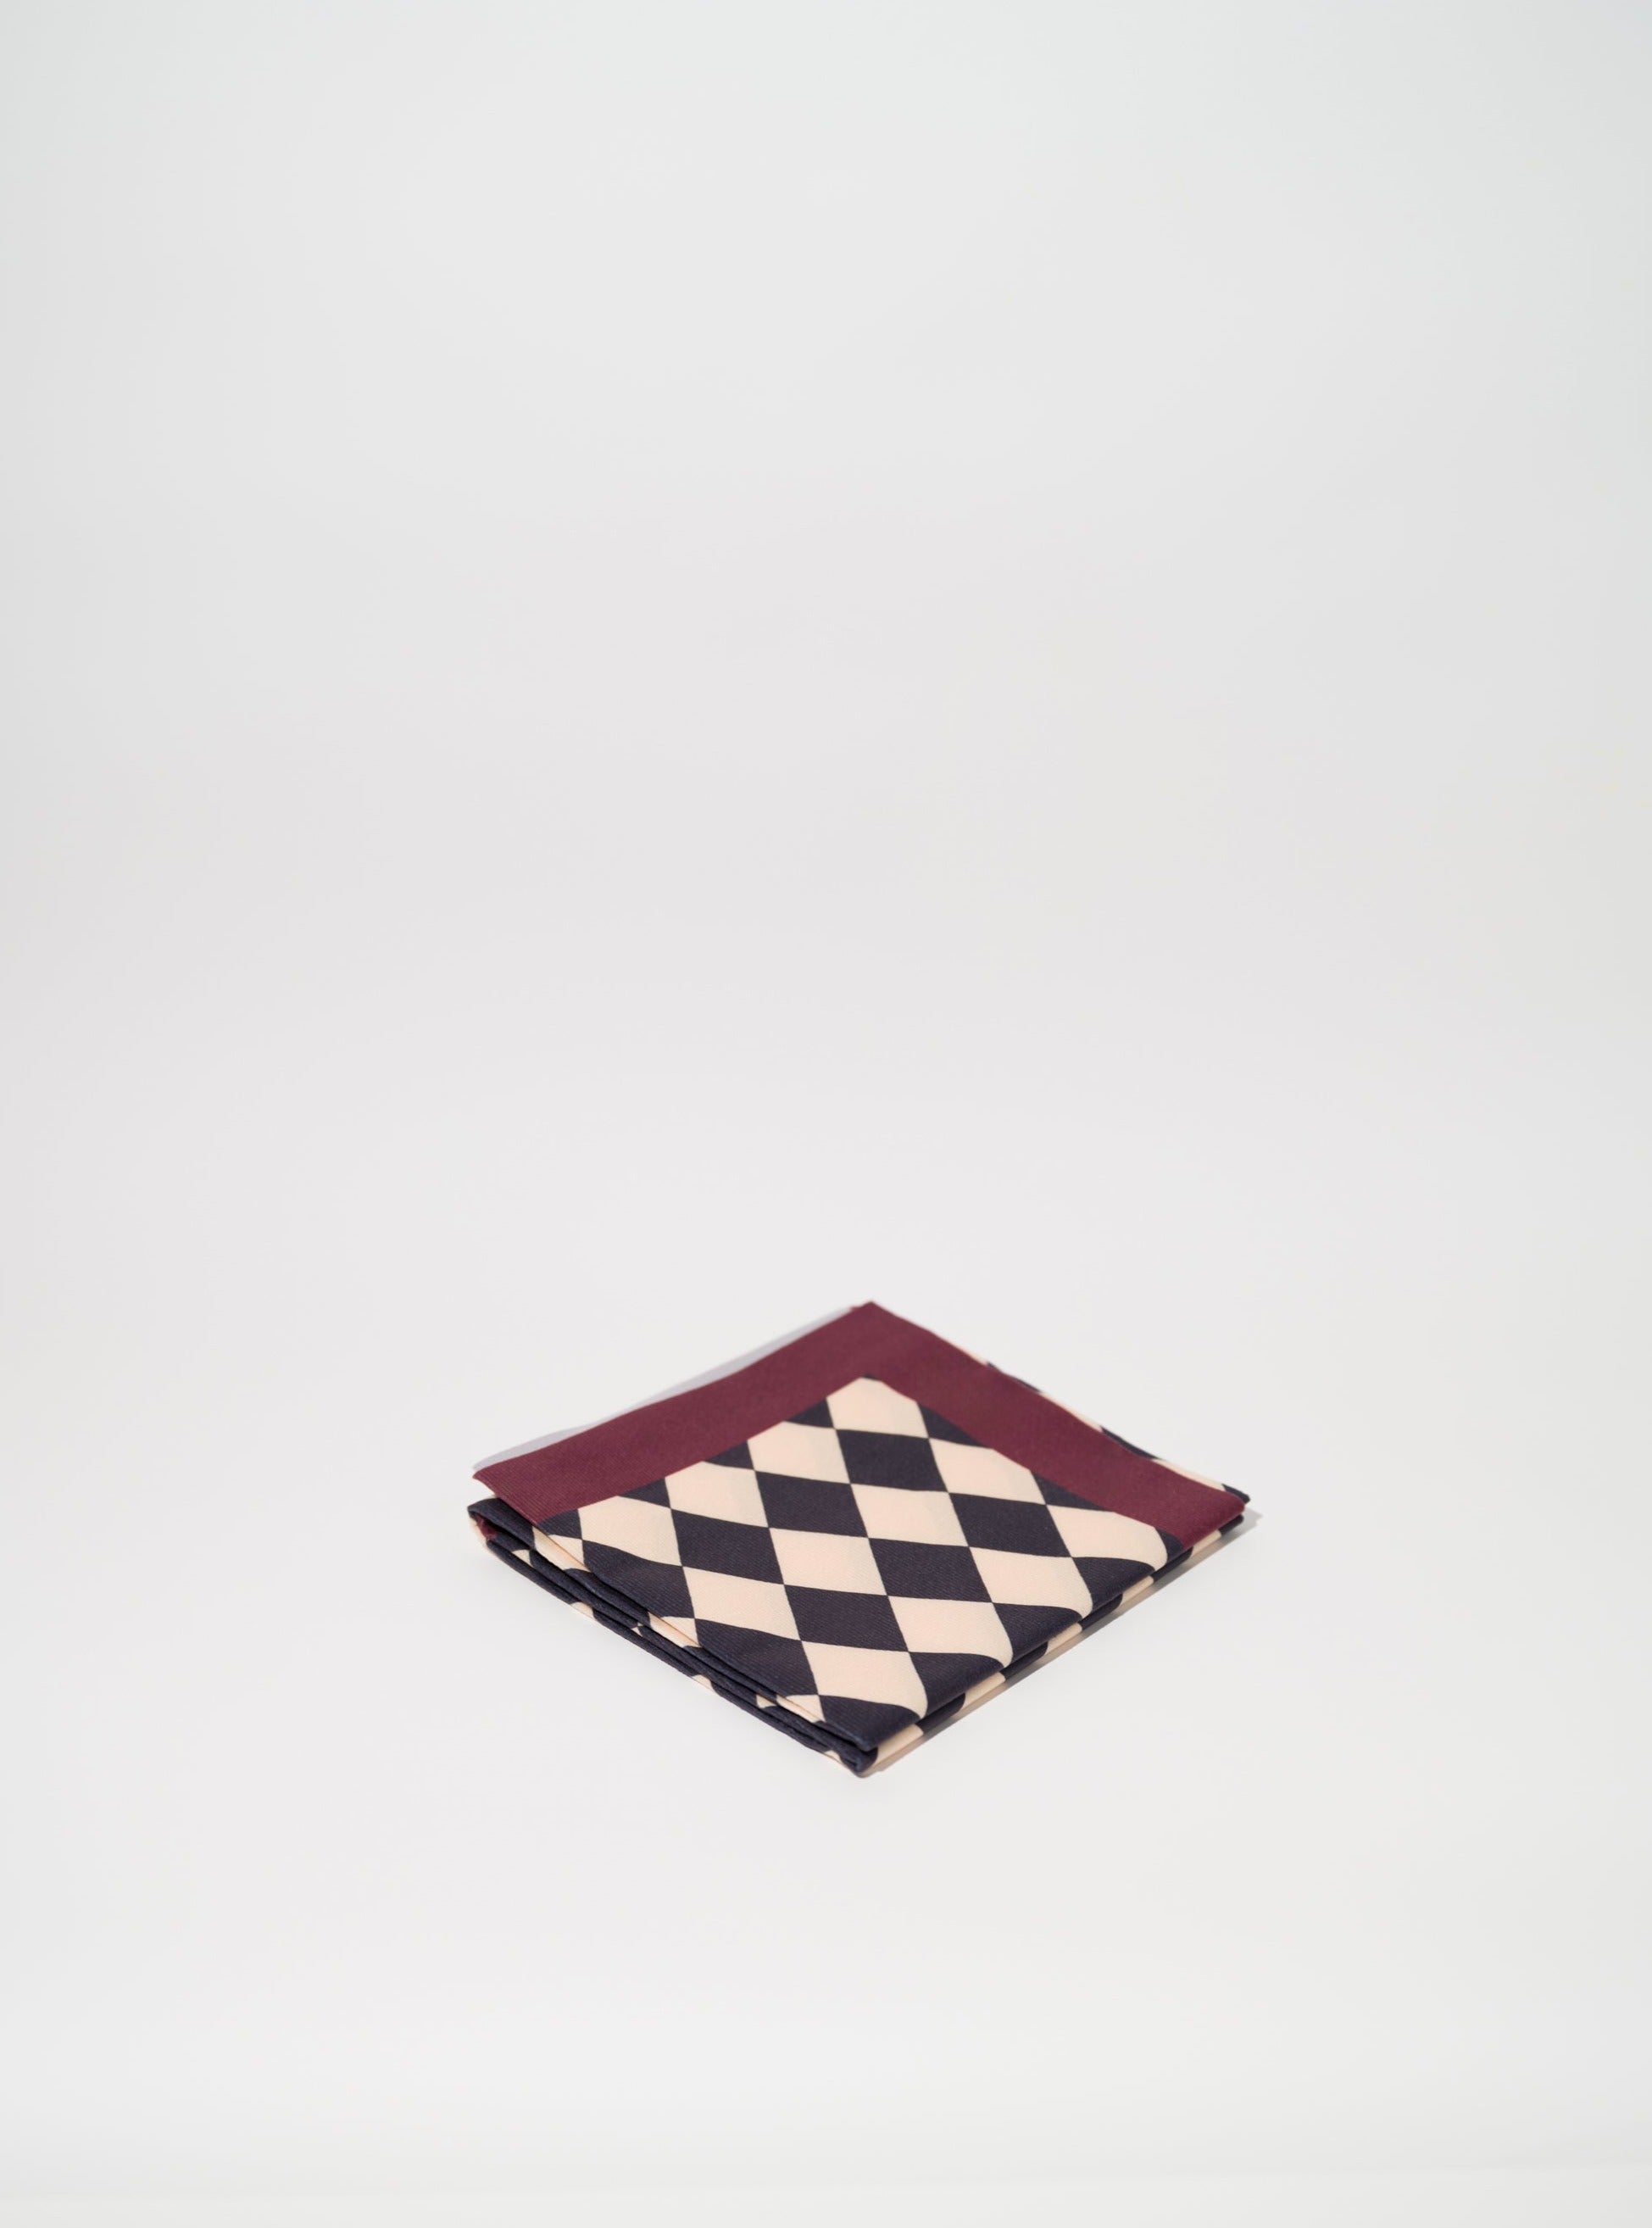 Circus Checkerboard Tablecloth